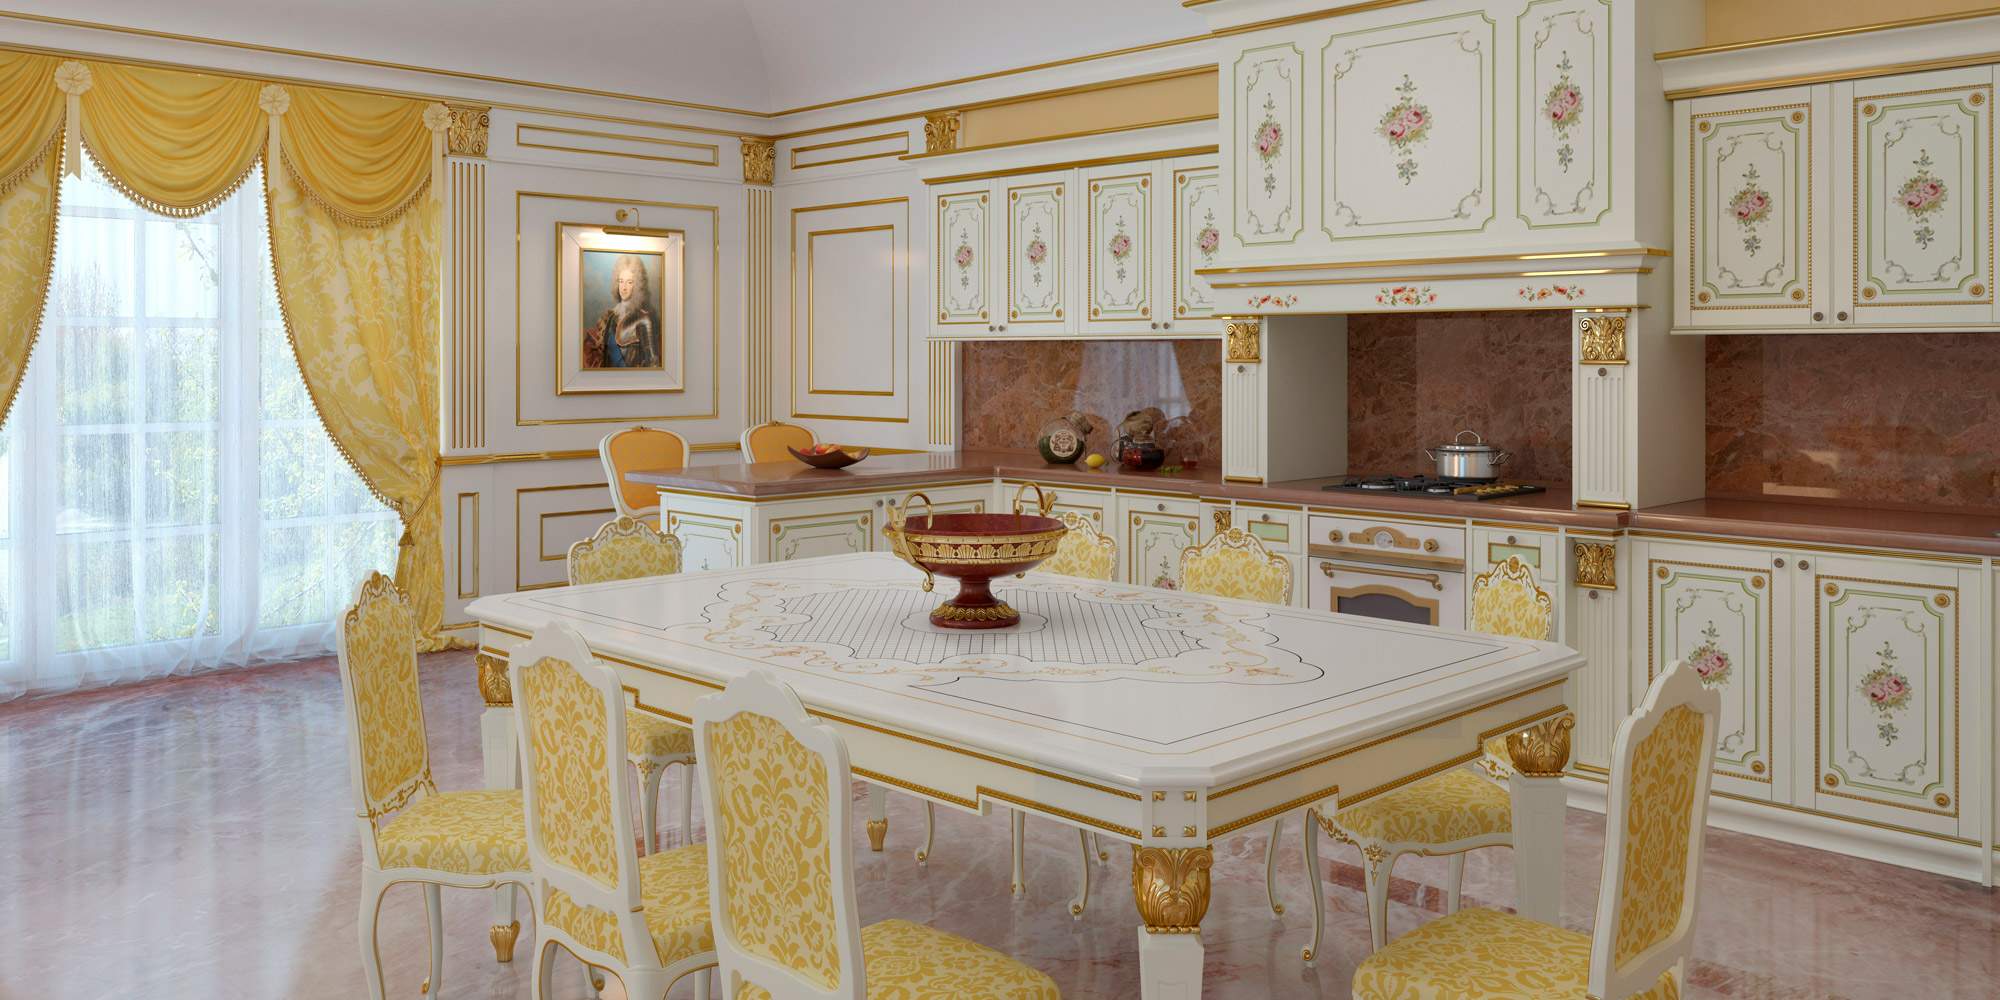 Luxury classic kitchen Veruska model